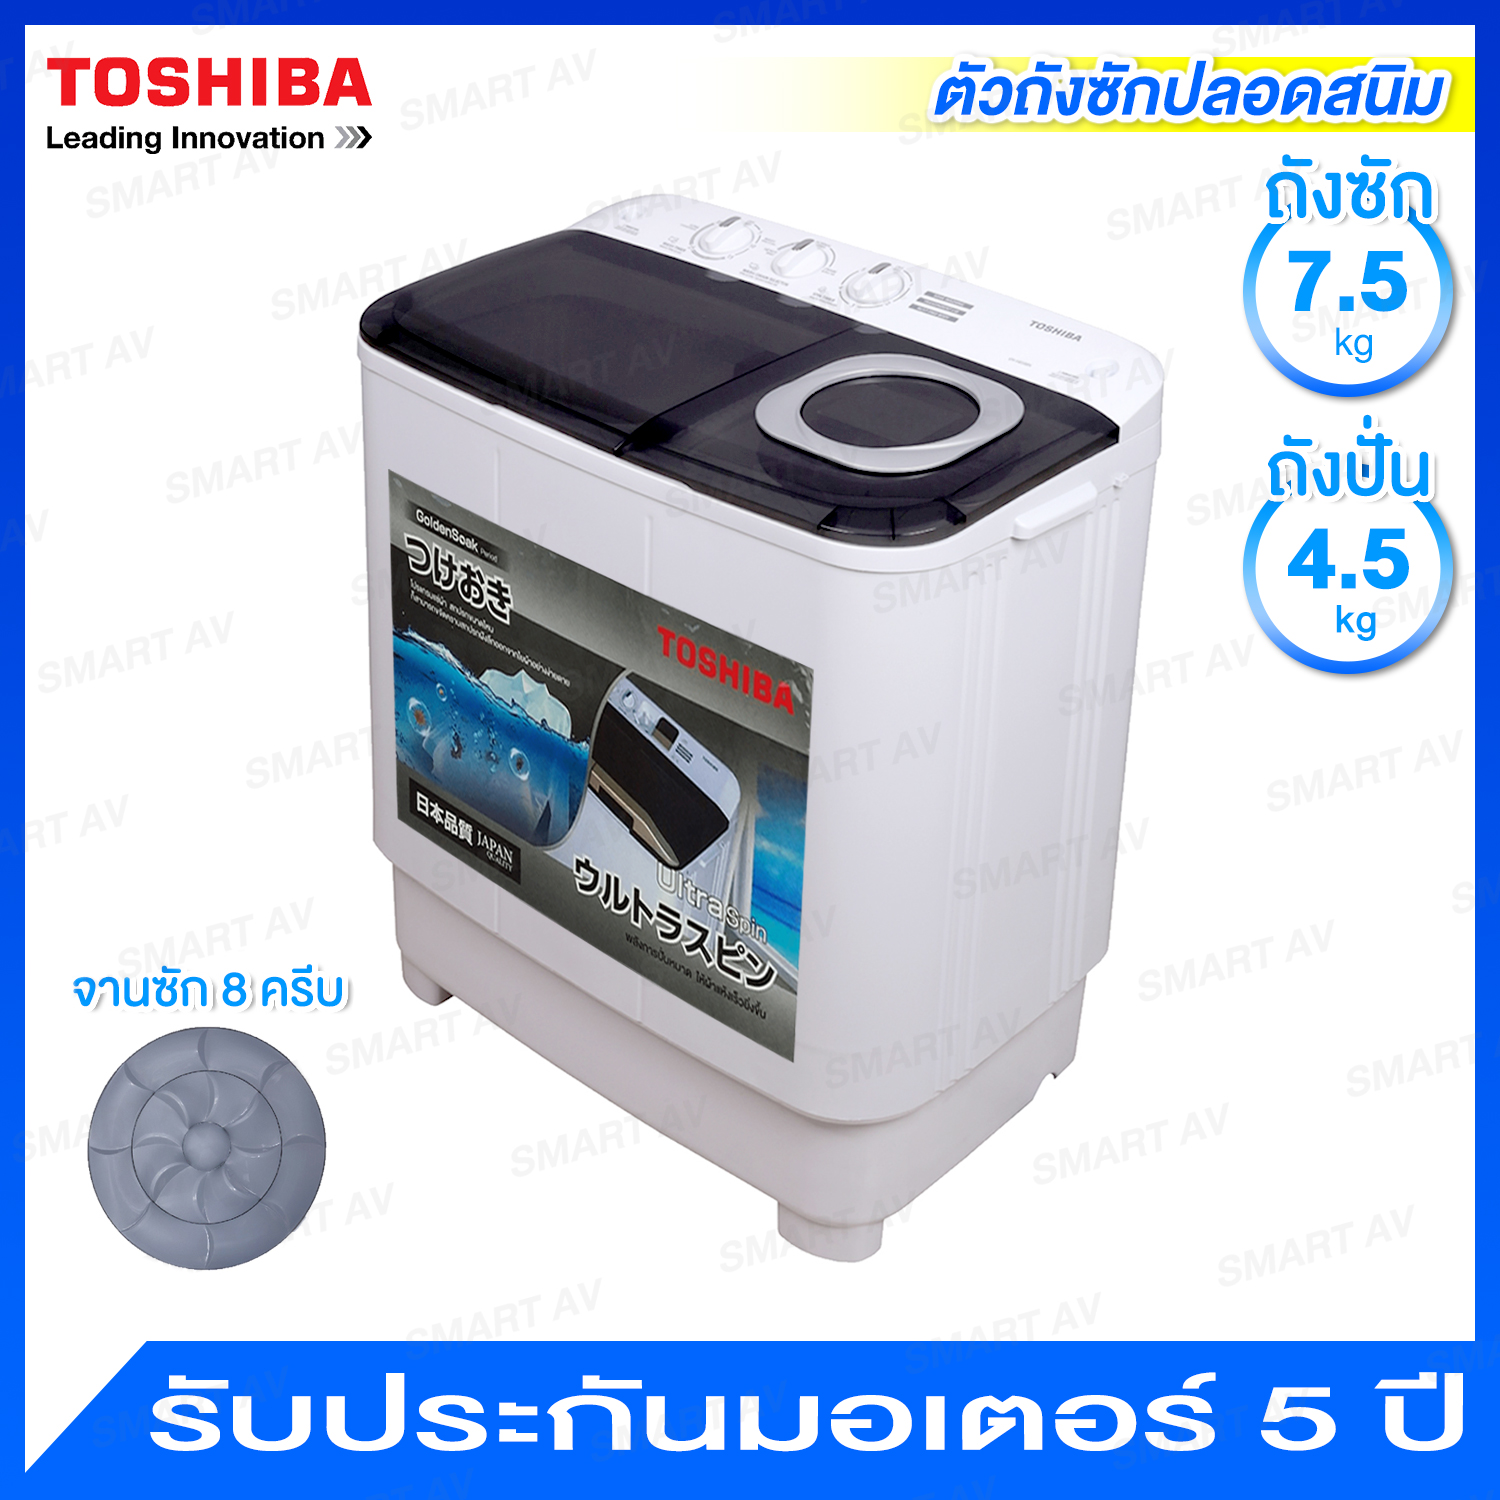 Toshiba เครื่องซักผ้าถังคู่ ความจุ 7.5 กก. พร้อมโปรแกรมแช่ผ้า รุ่น VH-H85MT